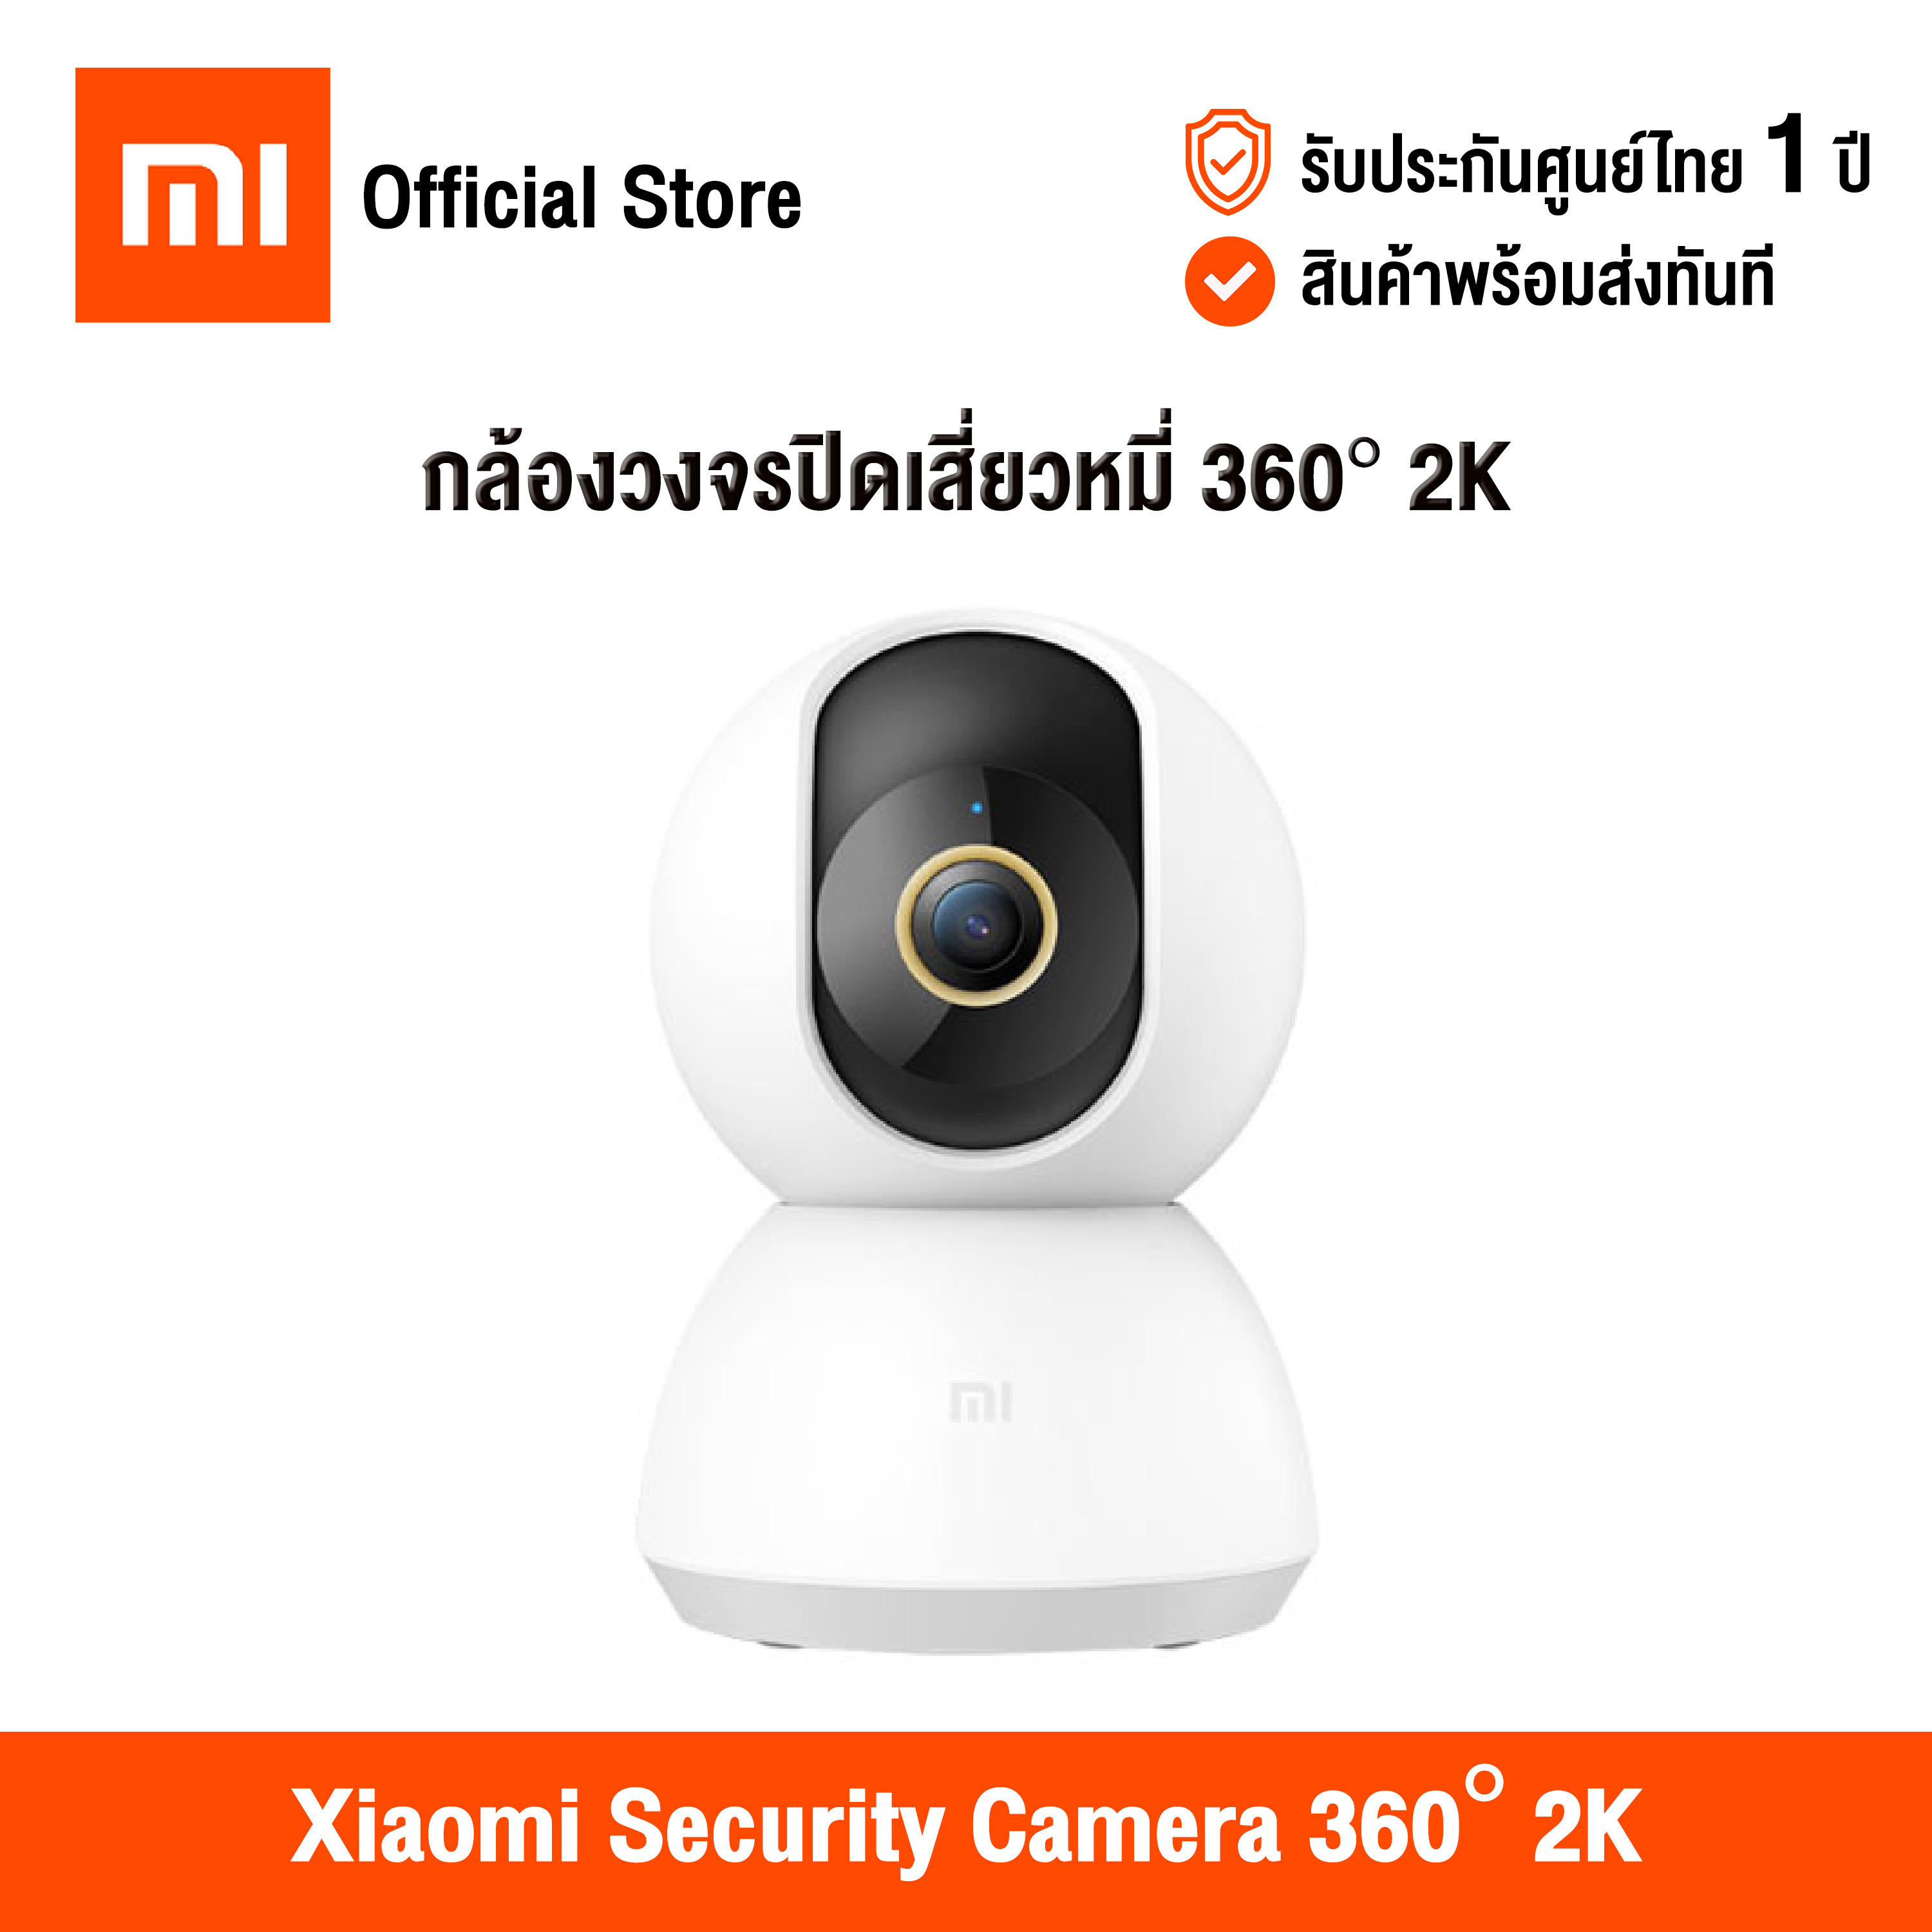 [ศูนย์ไทย] Xiaomi Security Camera 360° 2K (Global Version) เสี่ยวหมี่ กล้องวงจรปิดไร้สาย 360 องศา ความคมชัดระดับ 2K